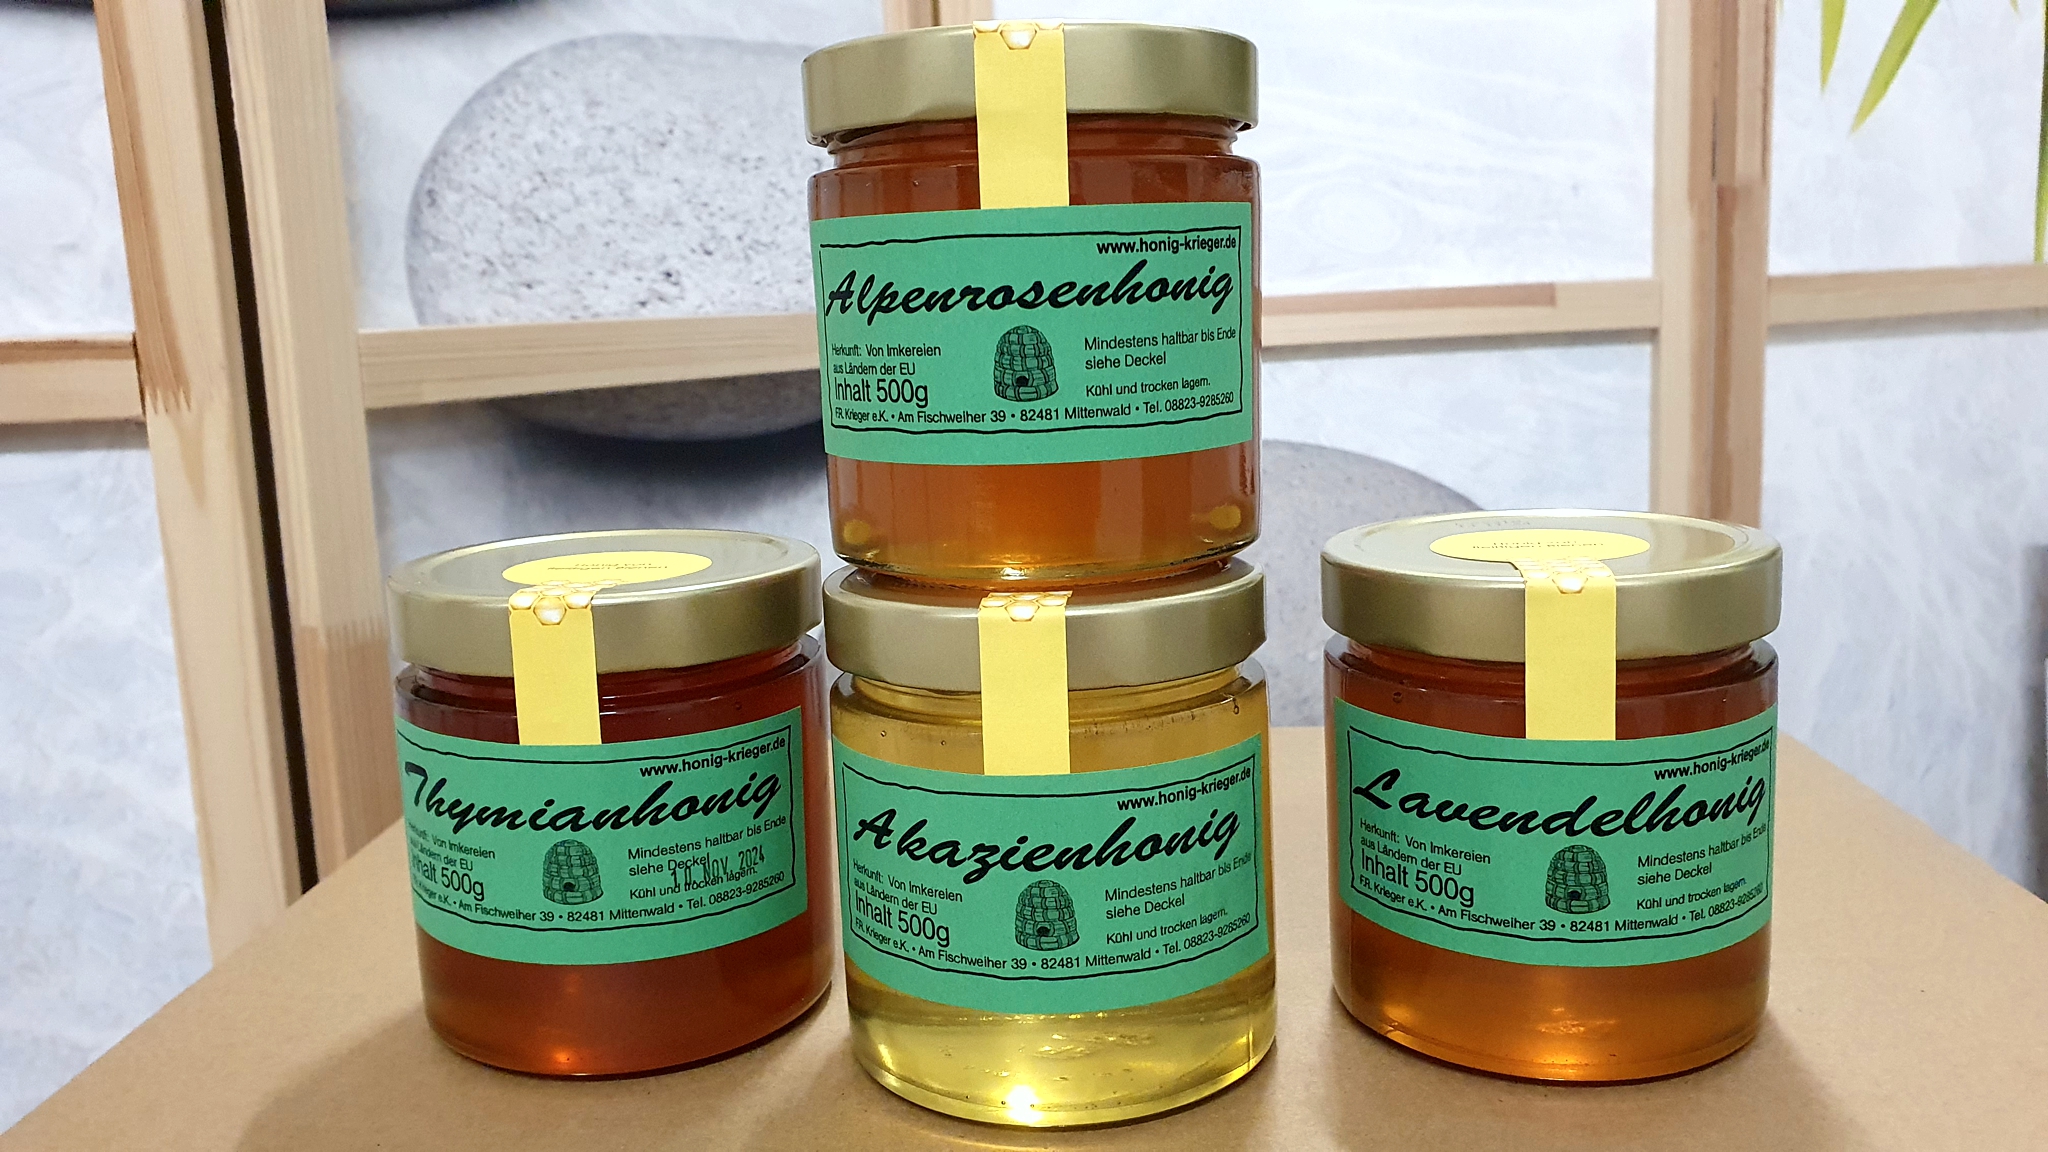 Premium Honig Spezialitäten - small